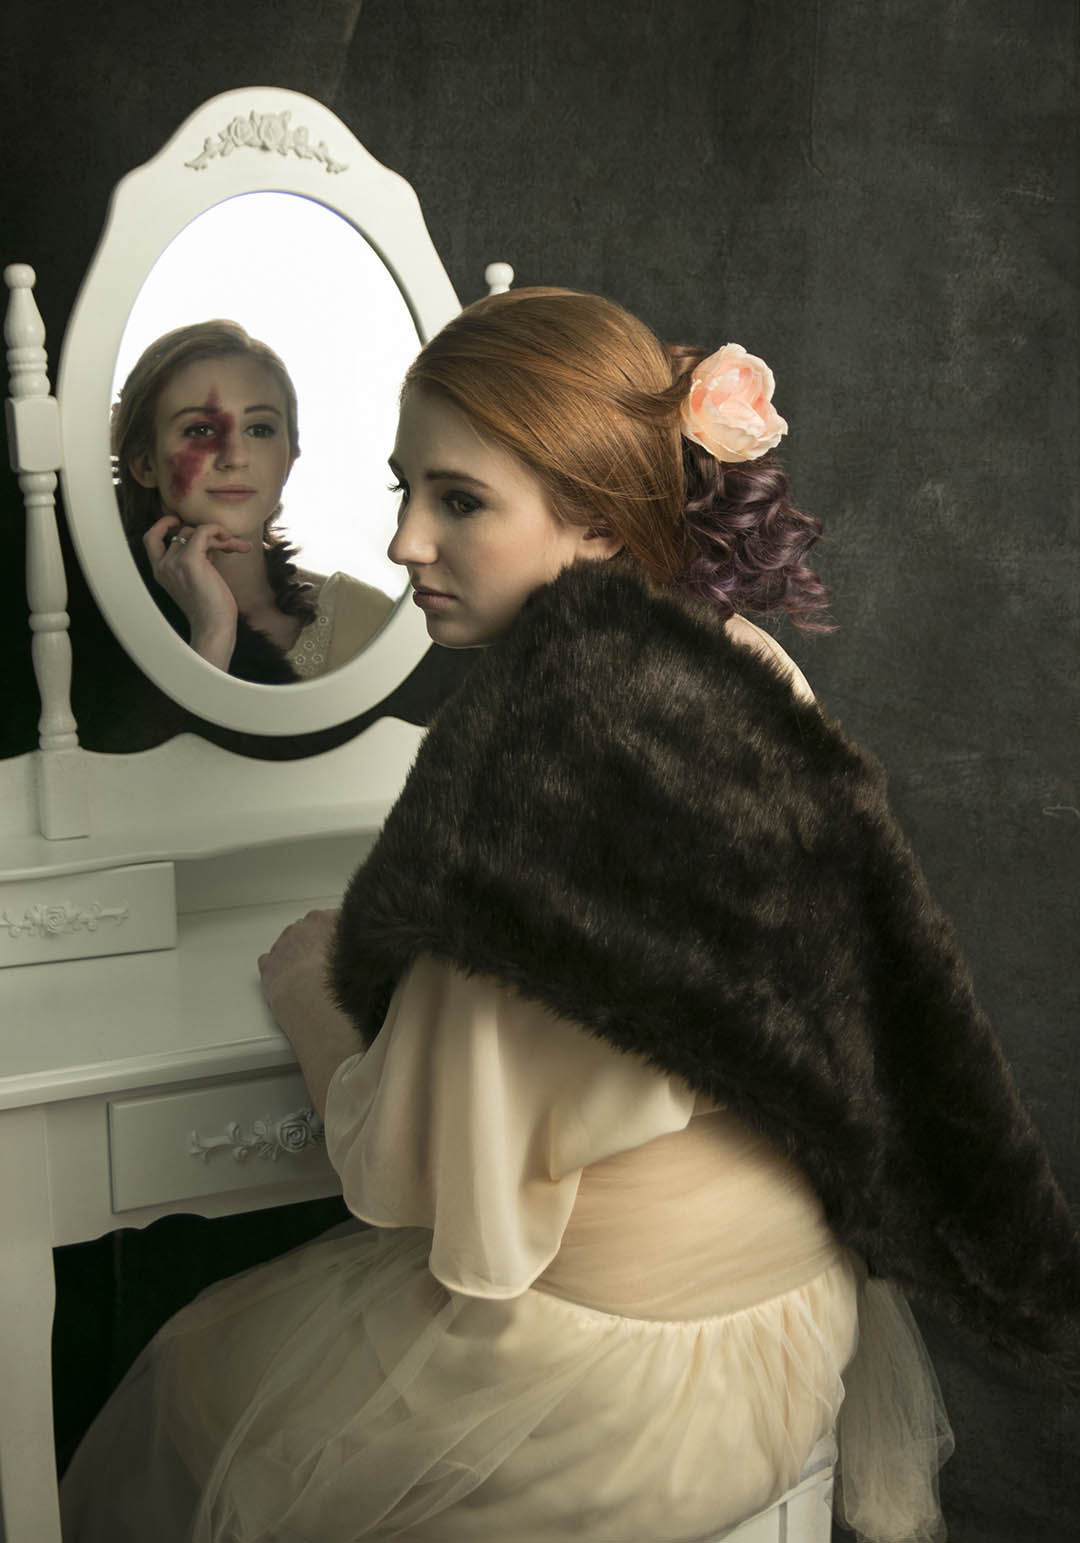 Bild zeigt eine junge Frau, die sich von ihrem Spiegelbild abwendet, weil sie nur ihren Makel sieht, nicht ihren Selbstwert